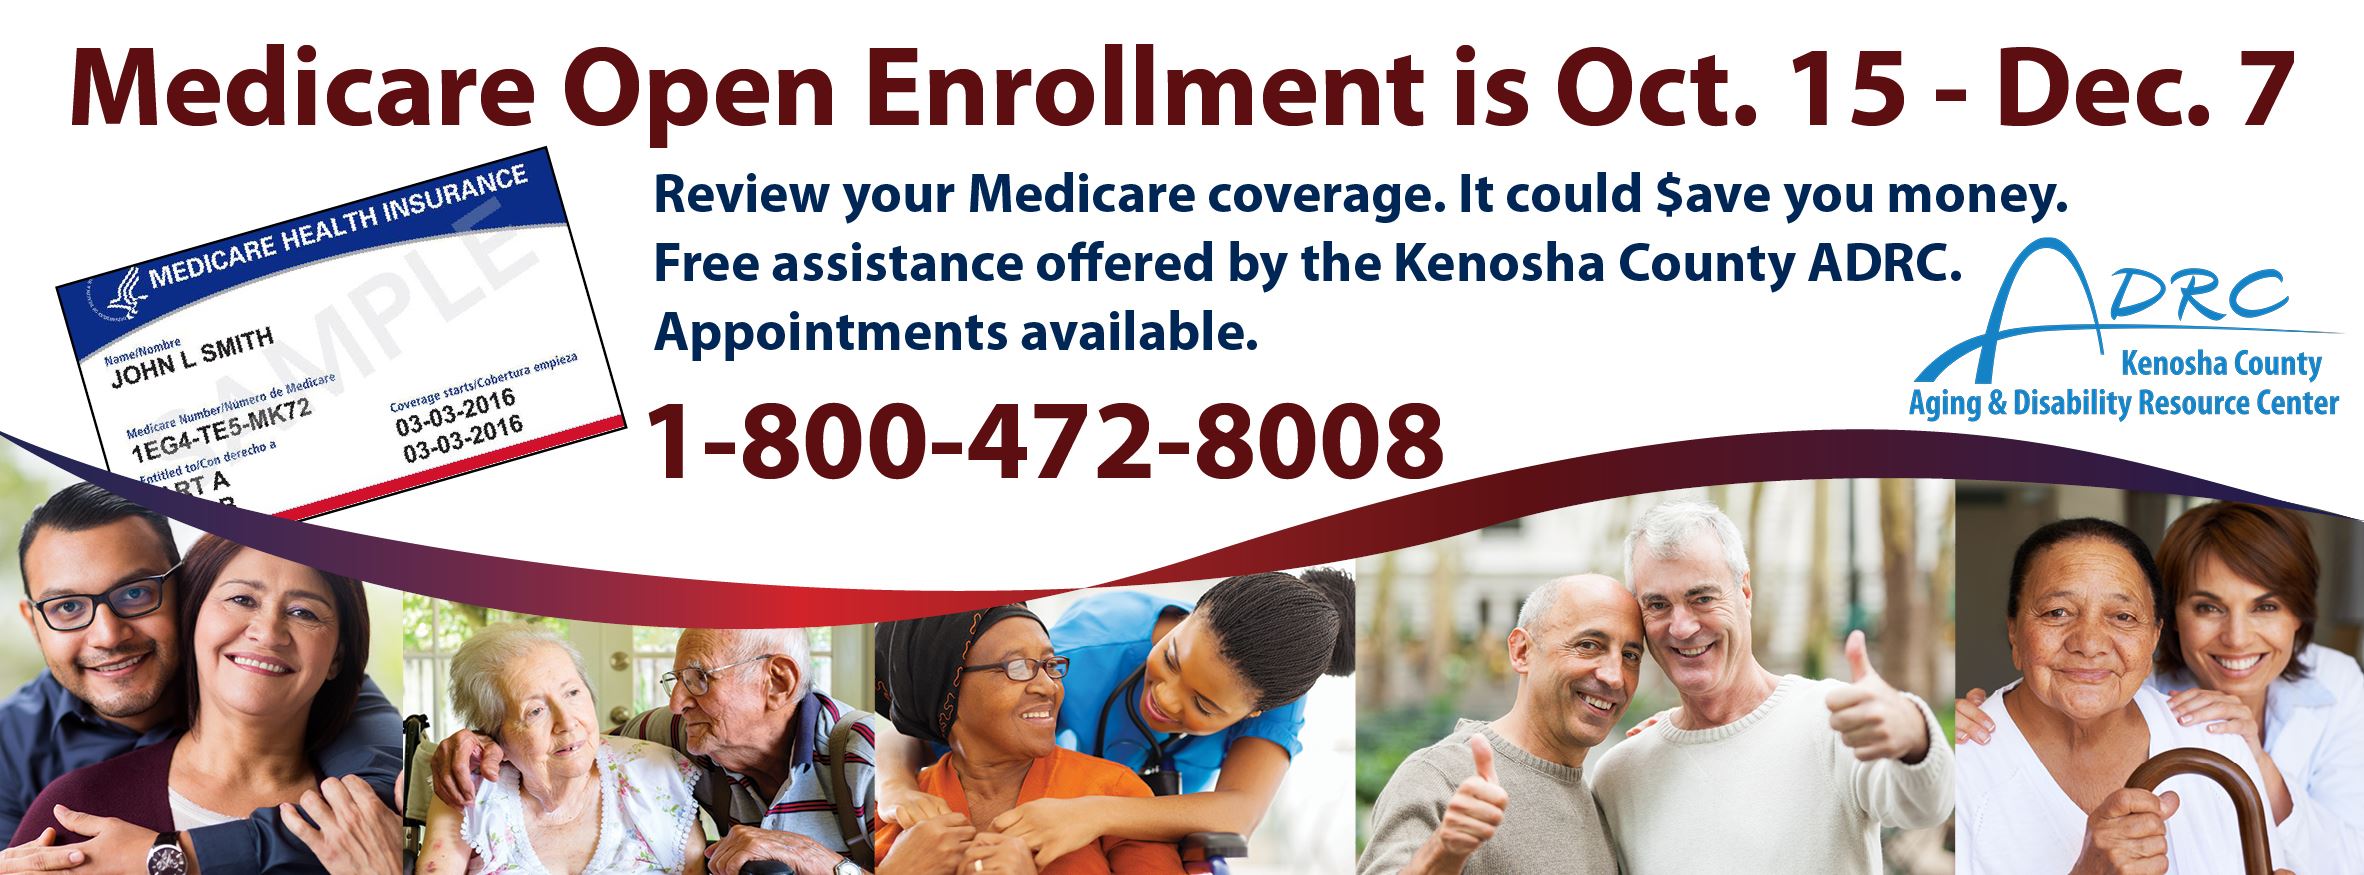 Medicare Open Enrollment is Oct 15-Dec 7. Artwork in deep red, navy. 